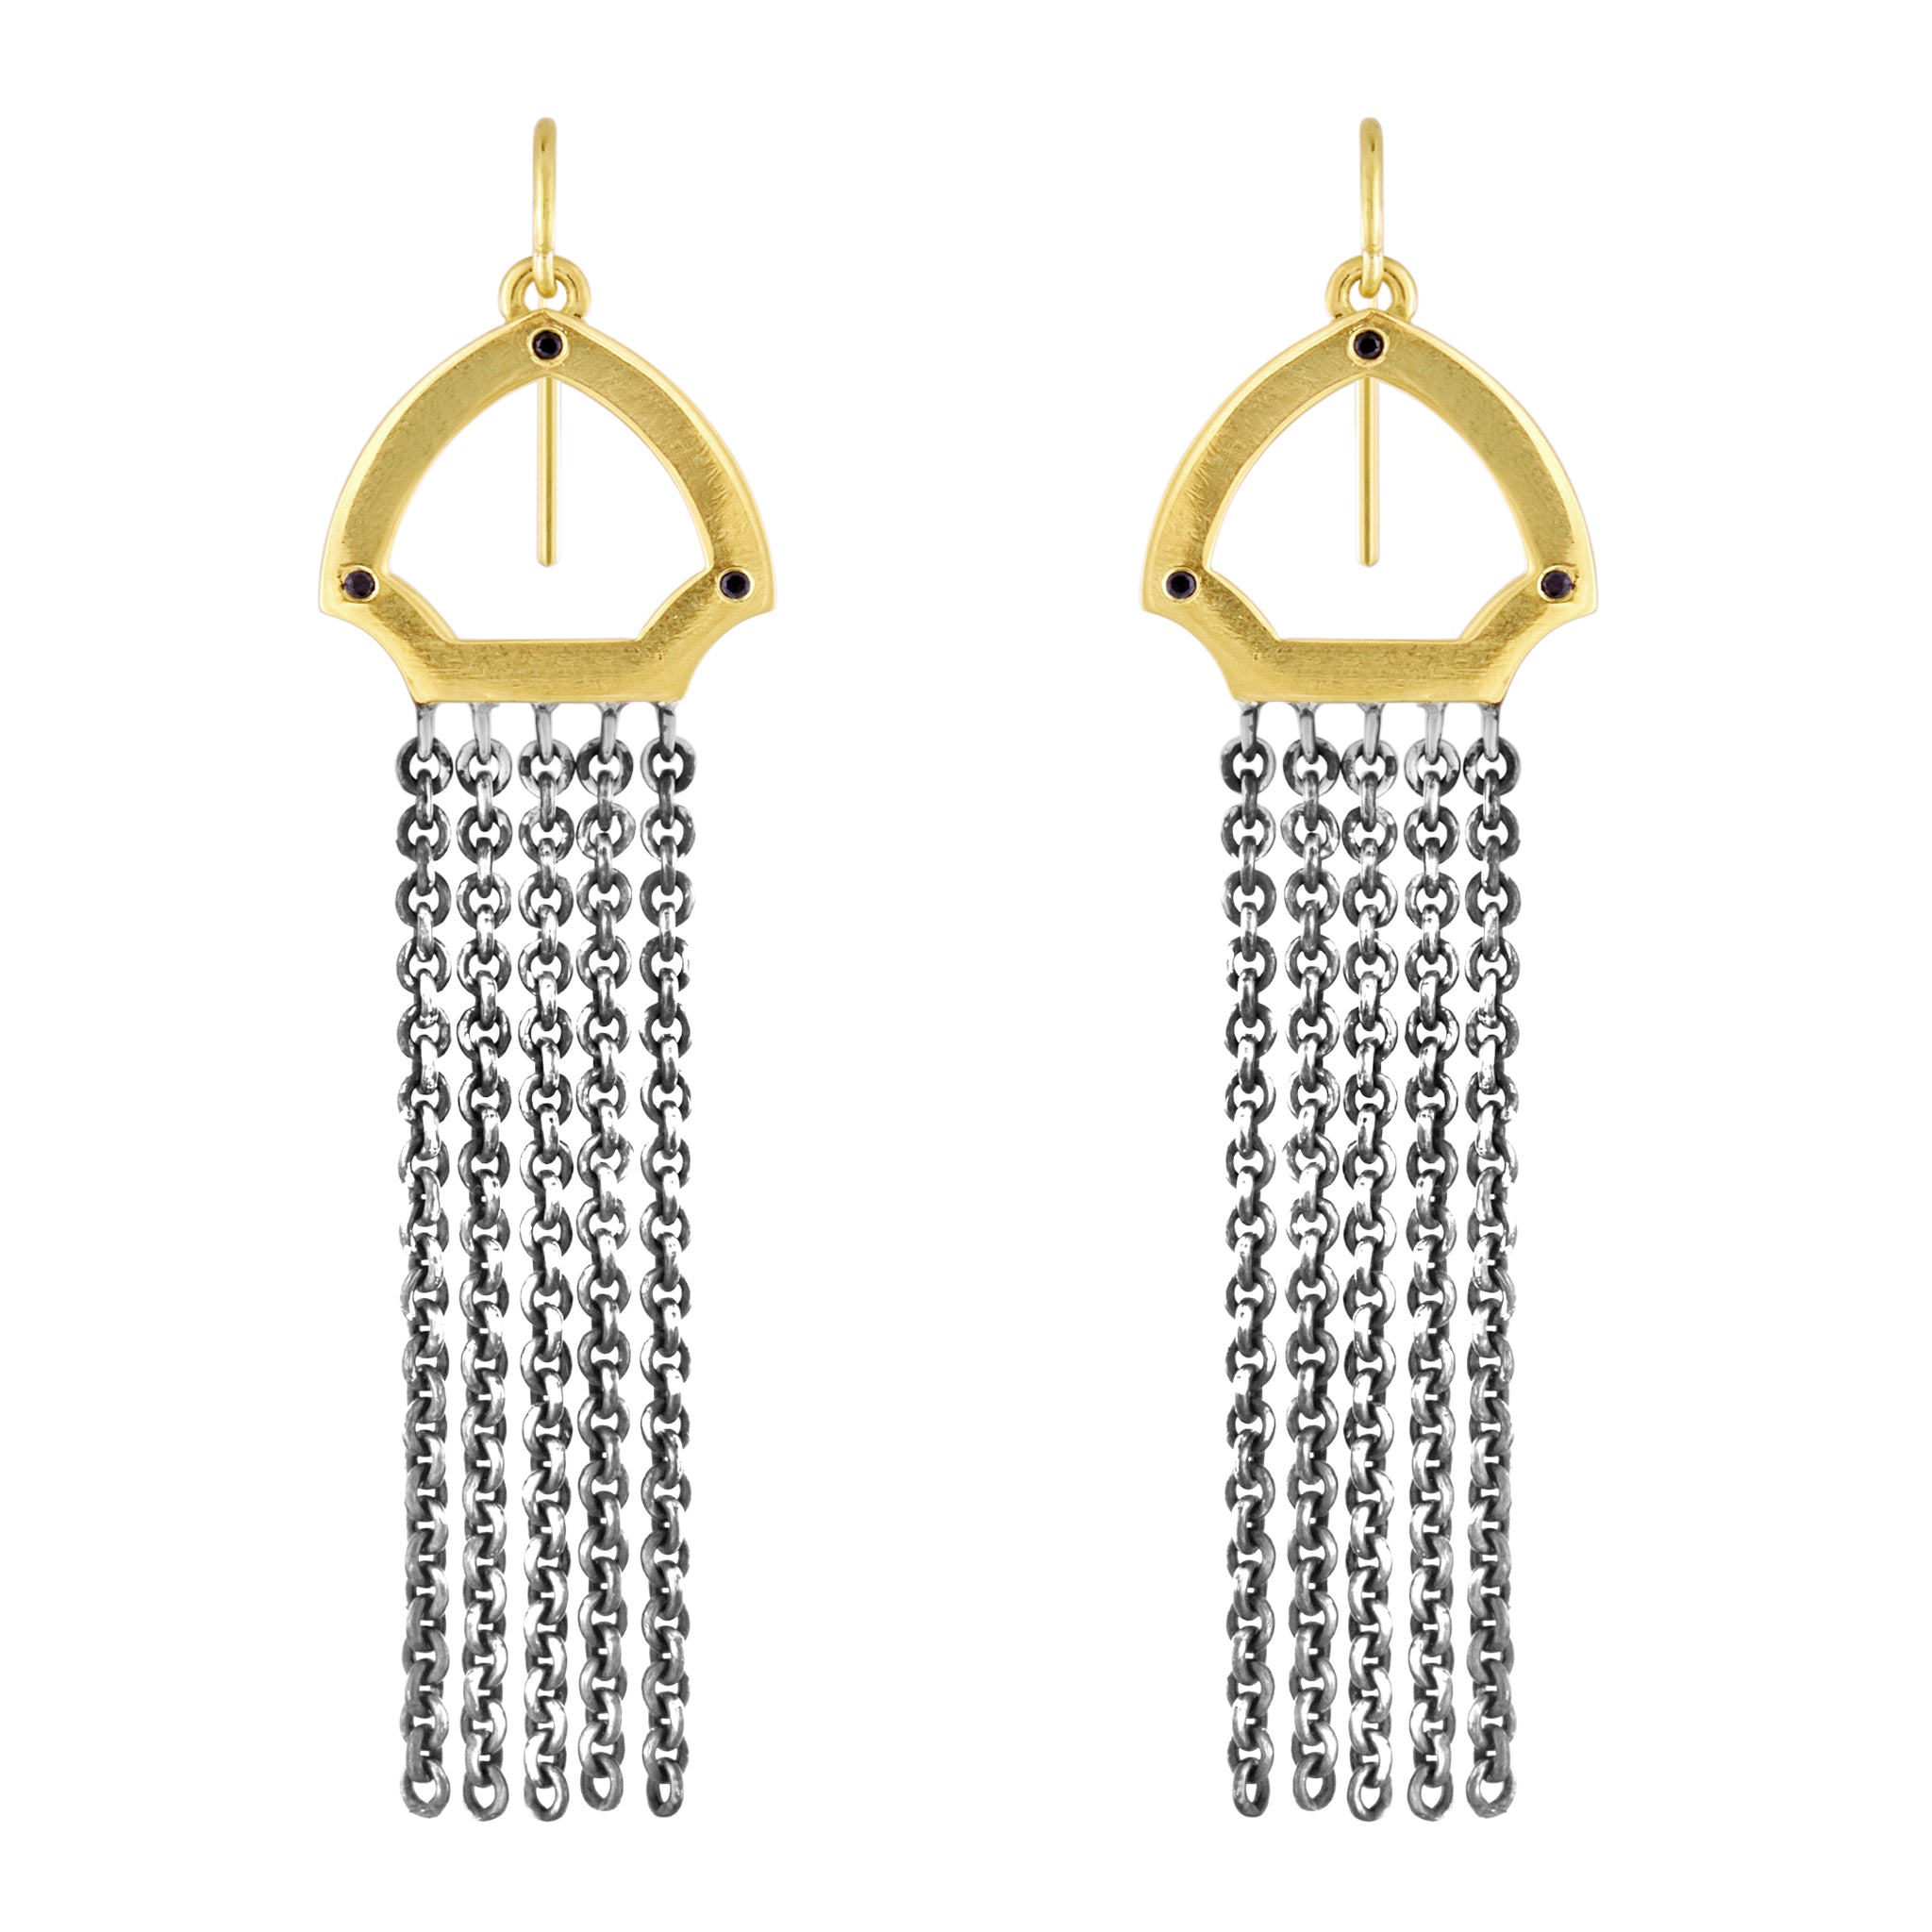 Hook Earrings: 14k Gold, Oxidized Silver, Black Diamonds